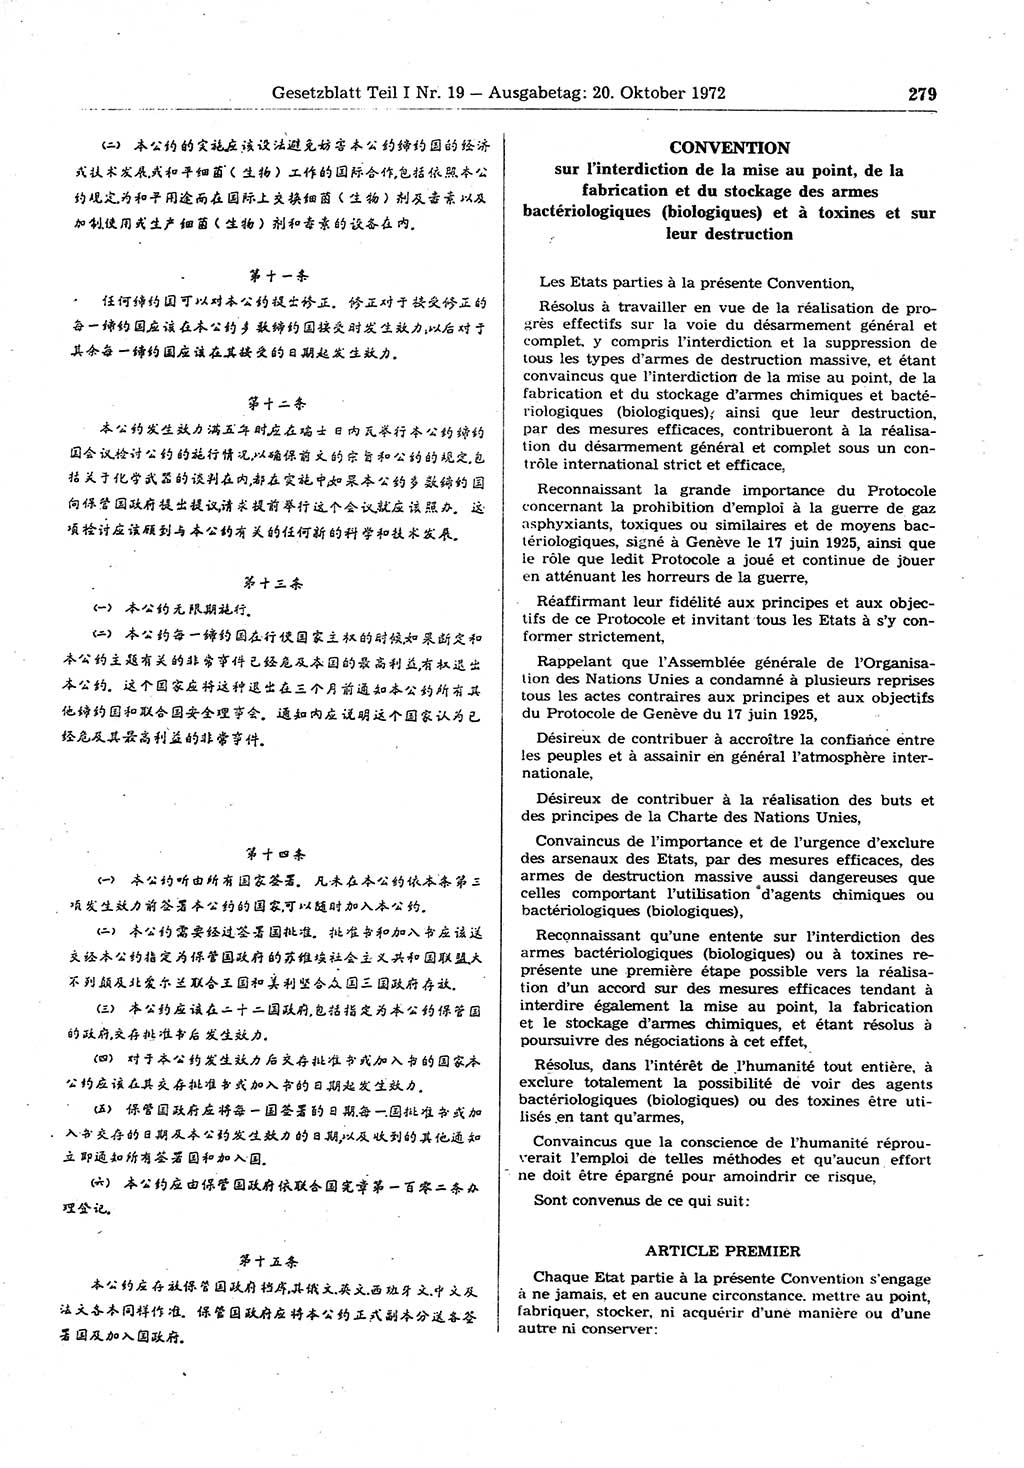 Gesetzblatt (GBl.) der Deutschen Demokratischen Republik (DDR) Teil Ⅰ 1972, Seite 279 (GBl. DDR Ⅰ 1972, S. 279)